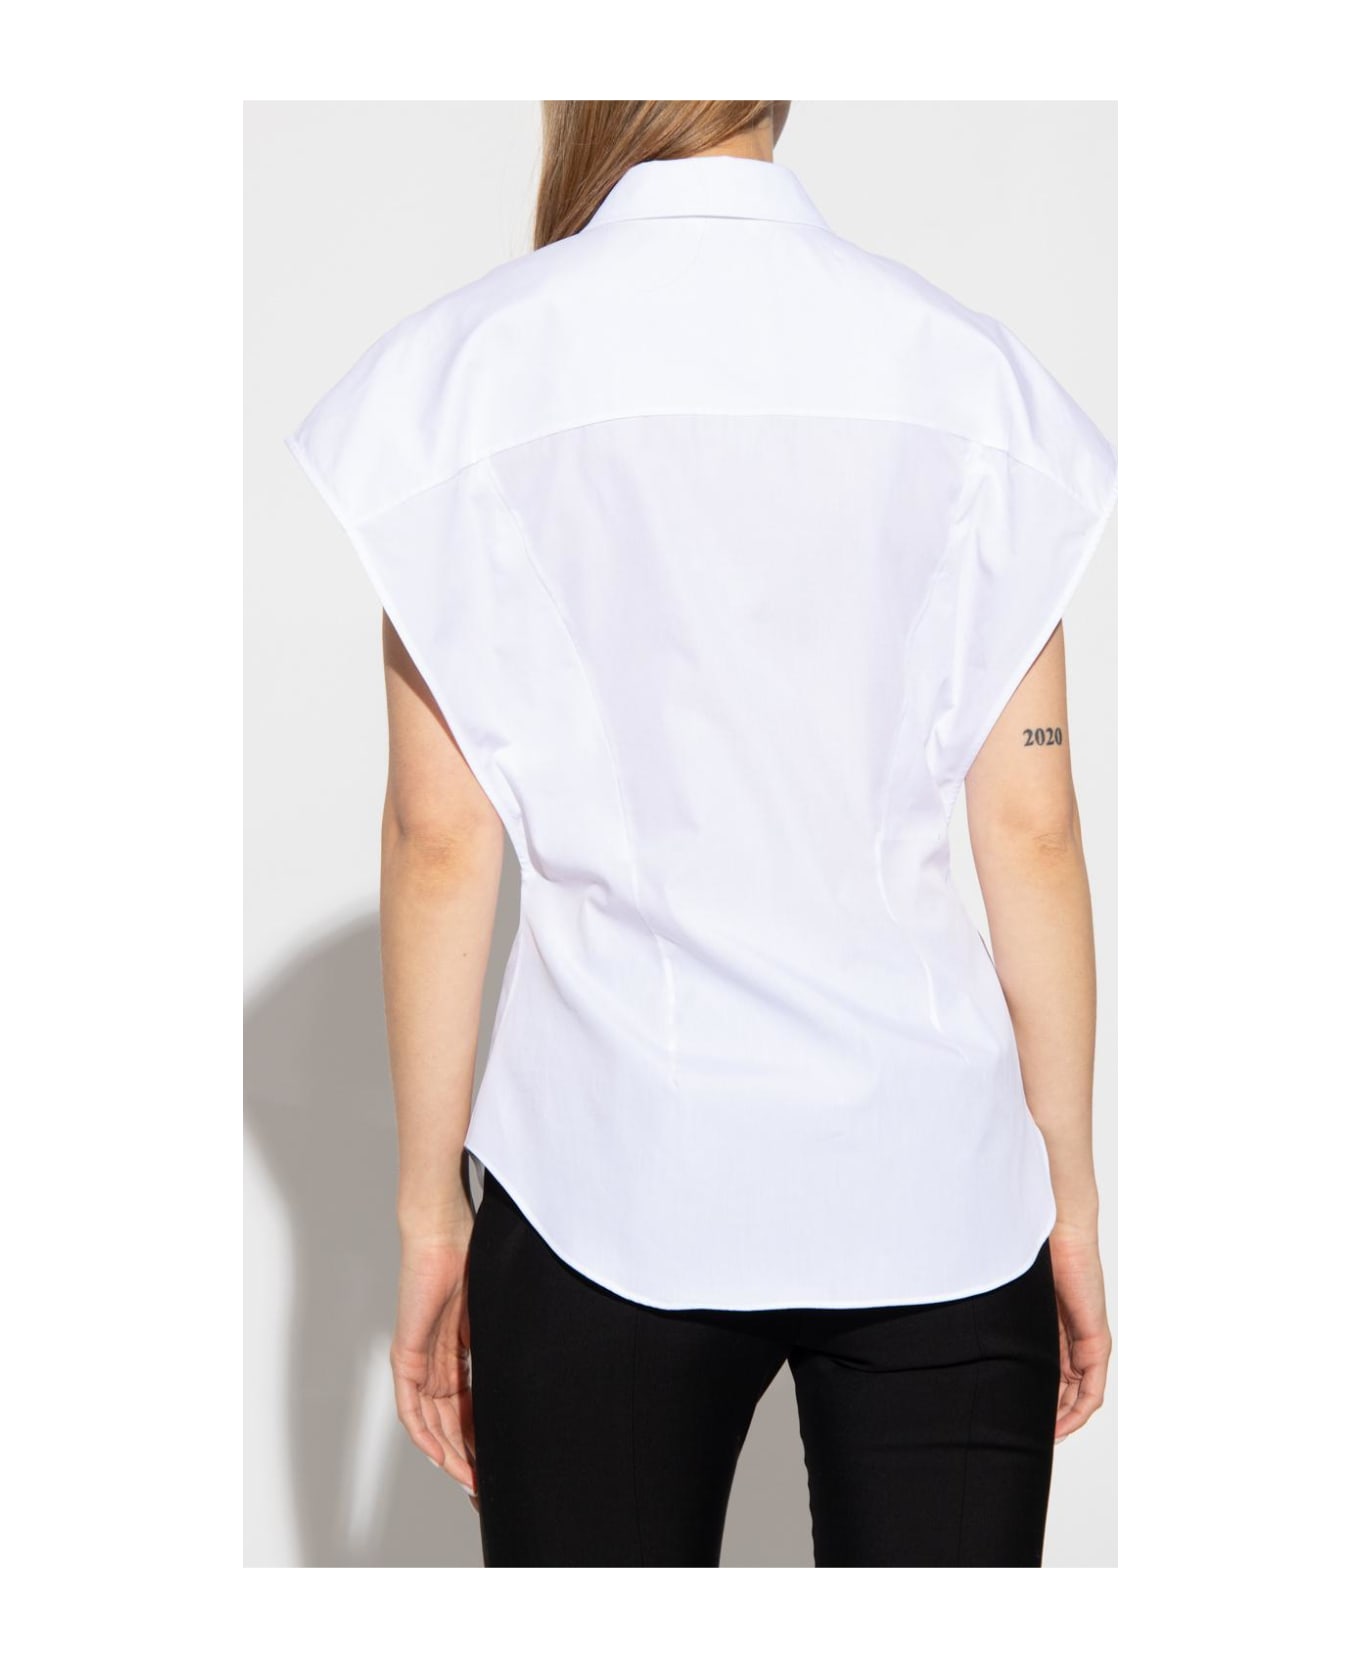 Alexander McQueen Short-sleeved Cotton Shirt - Bianco